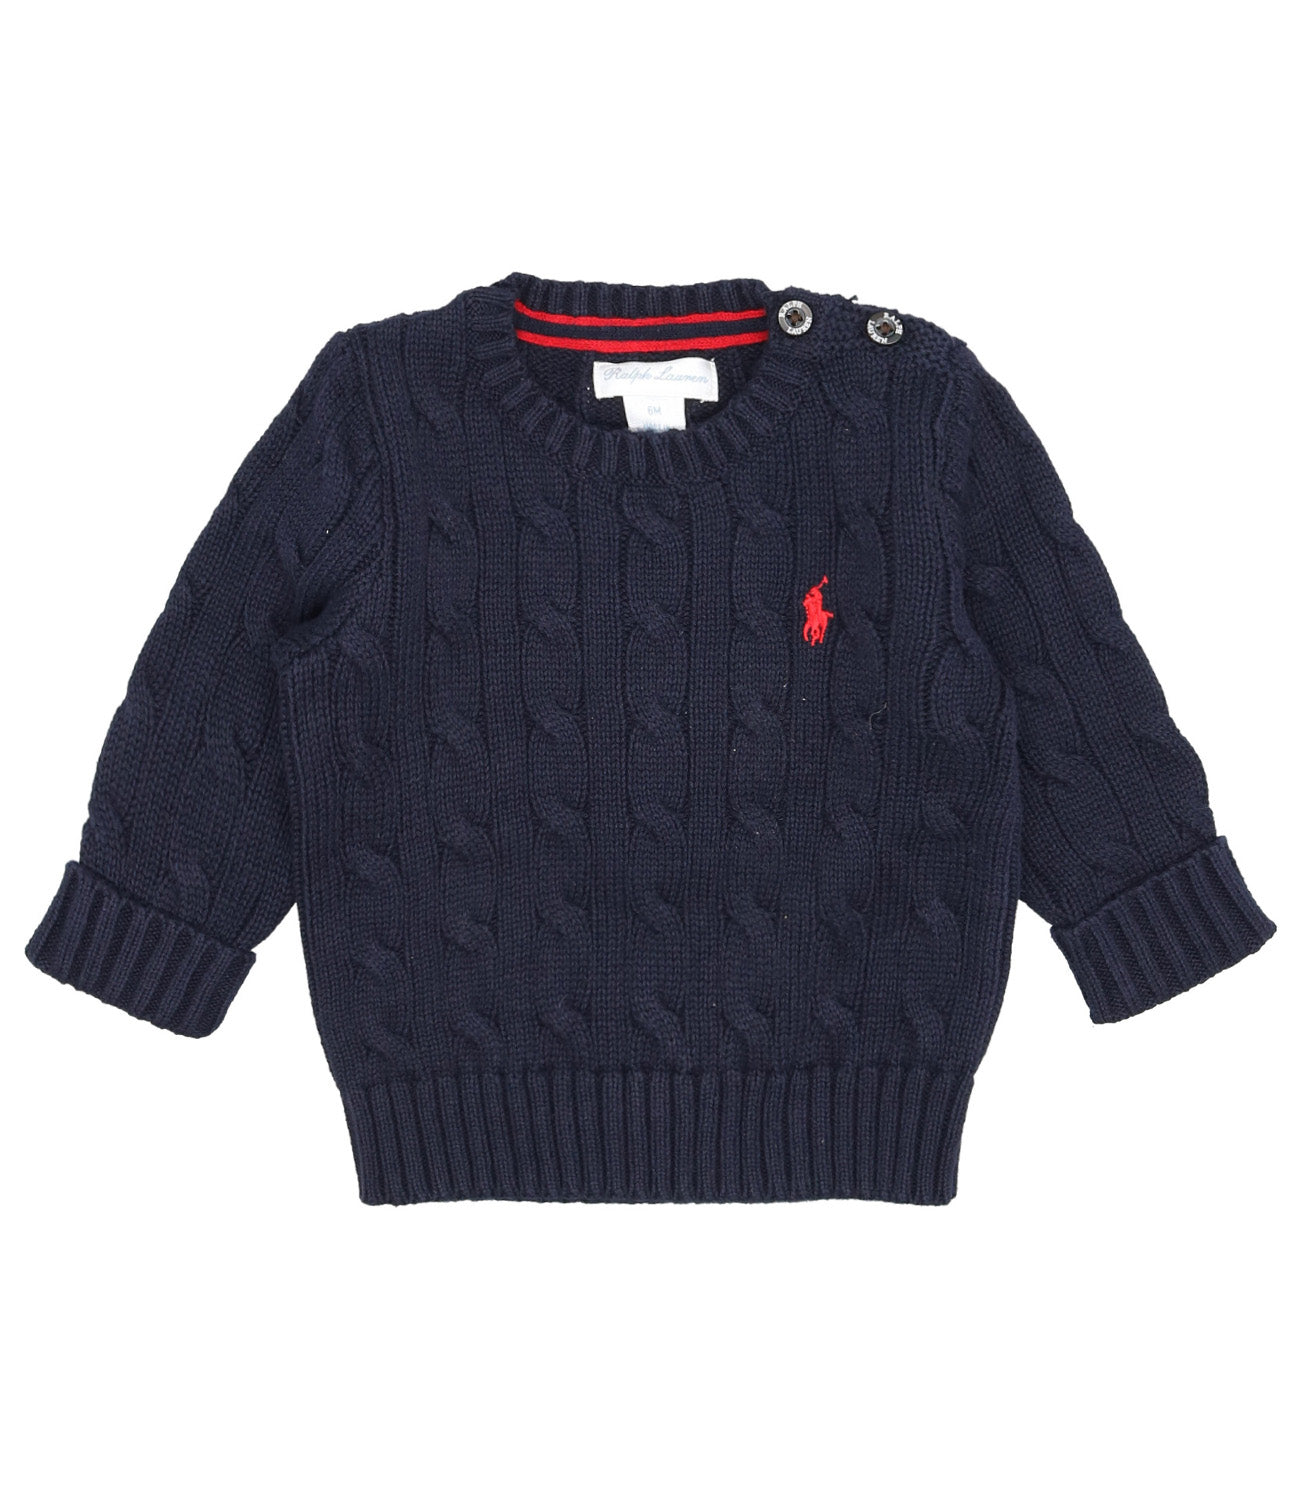 Ralph Lauren Childrenswear | Navy blue shirt